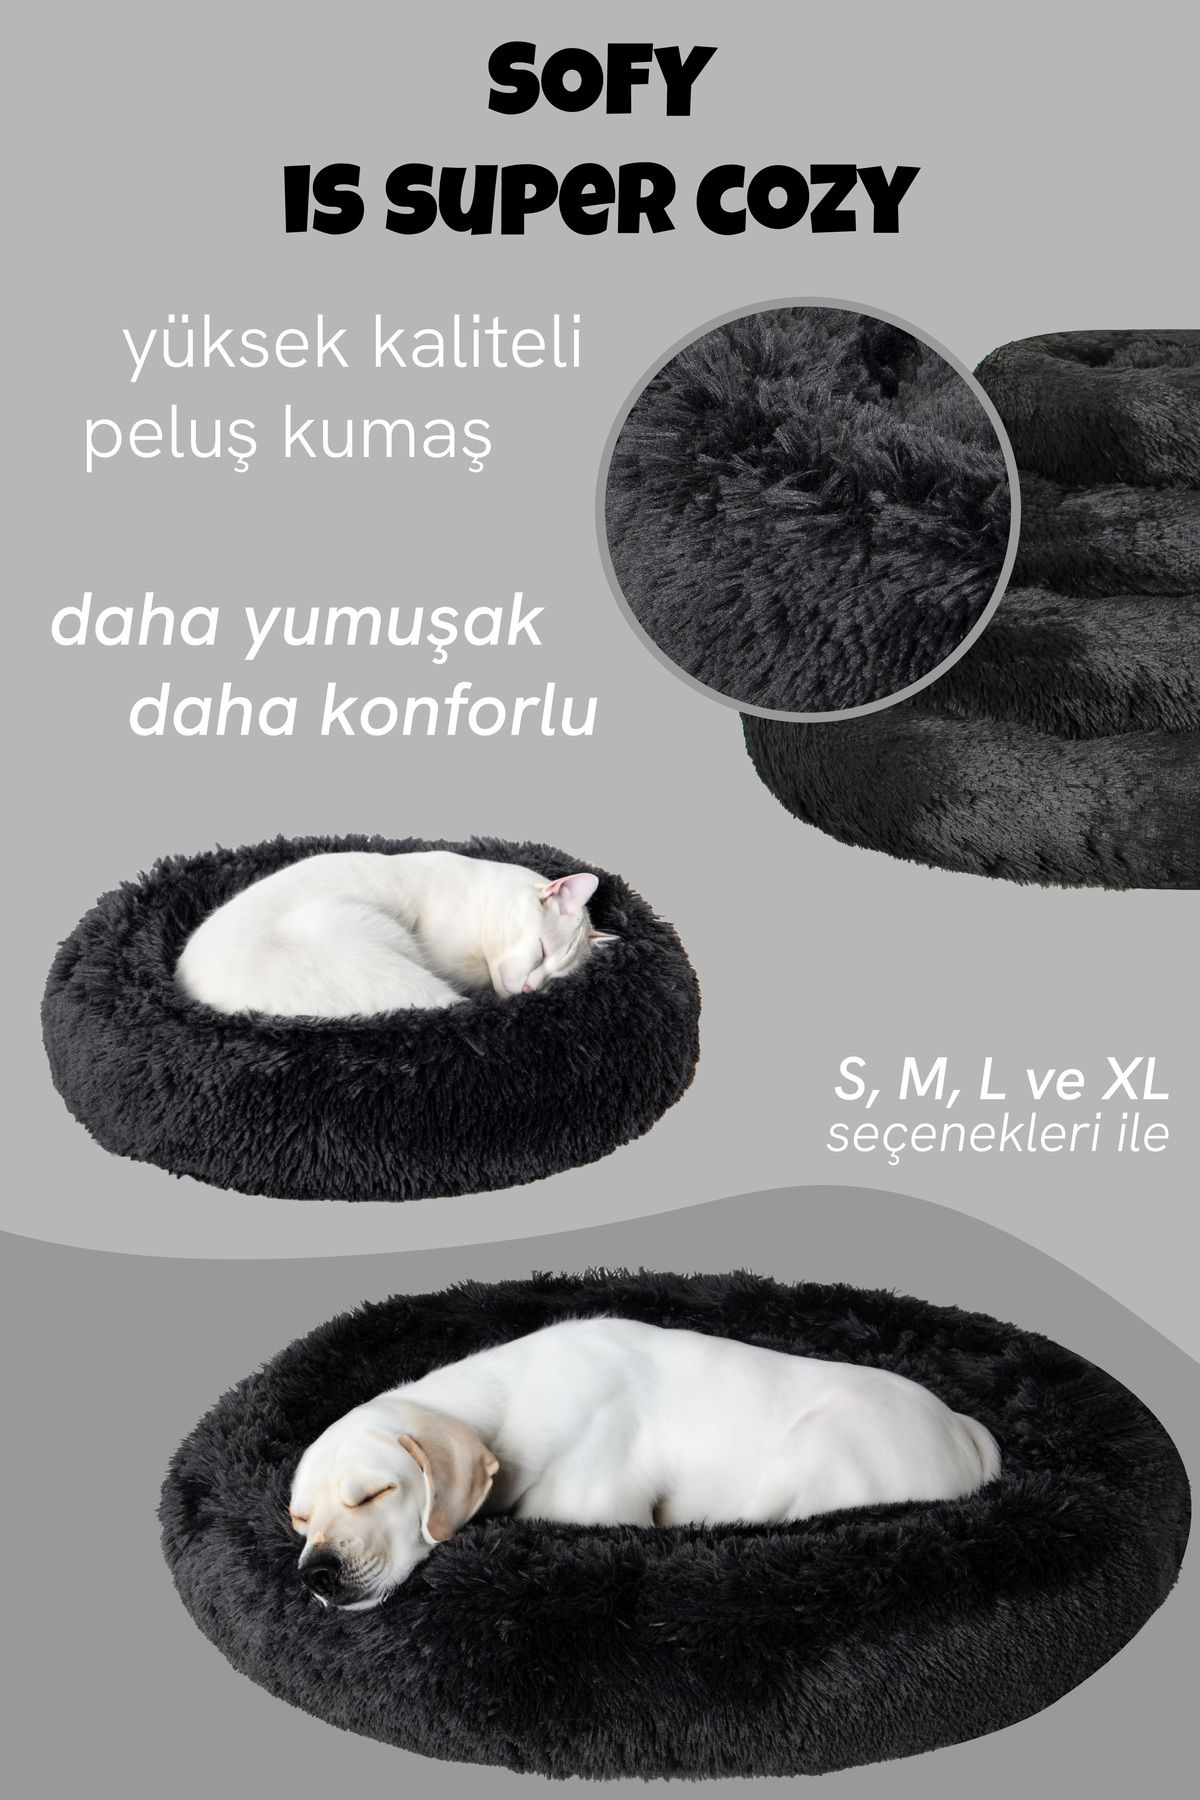 Jungolica Pet Products Sofy, Donut Şeklinde Sakinleştirici Etkili, Yüksek Kaliteli, Peluş Kedi Ve Köpek Yatağı (SİYAH)